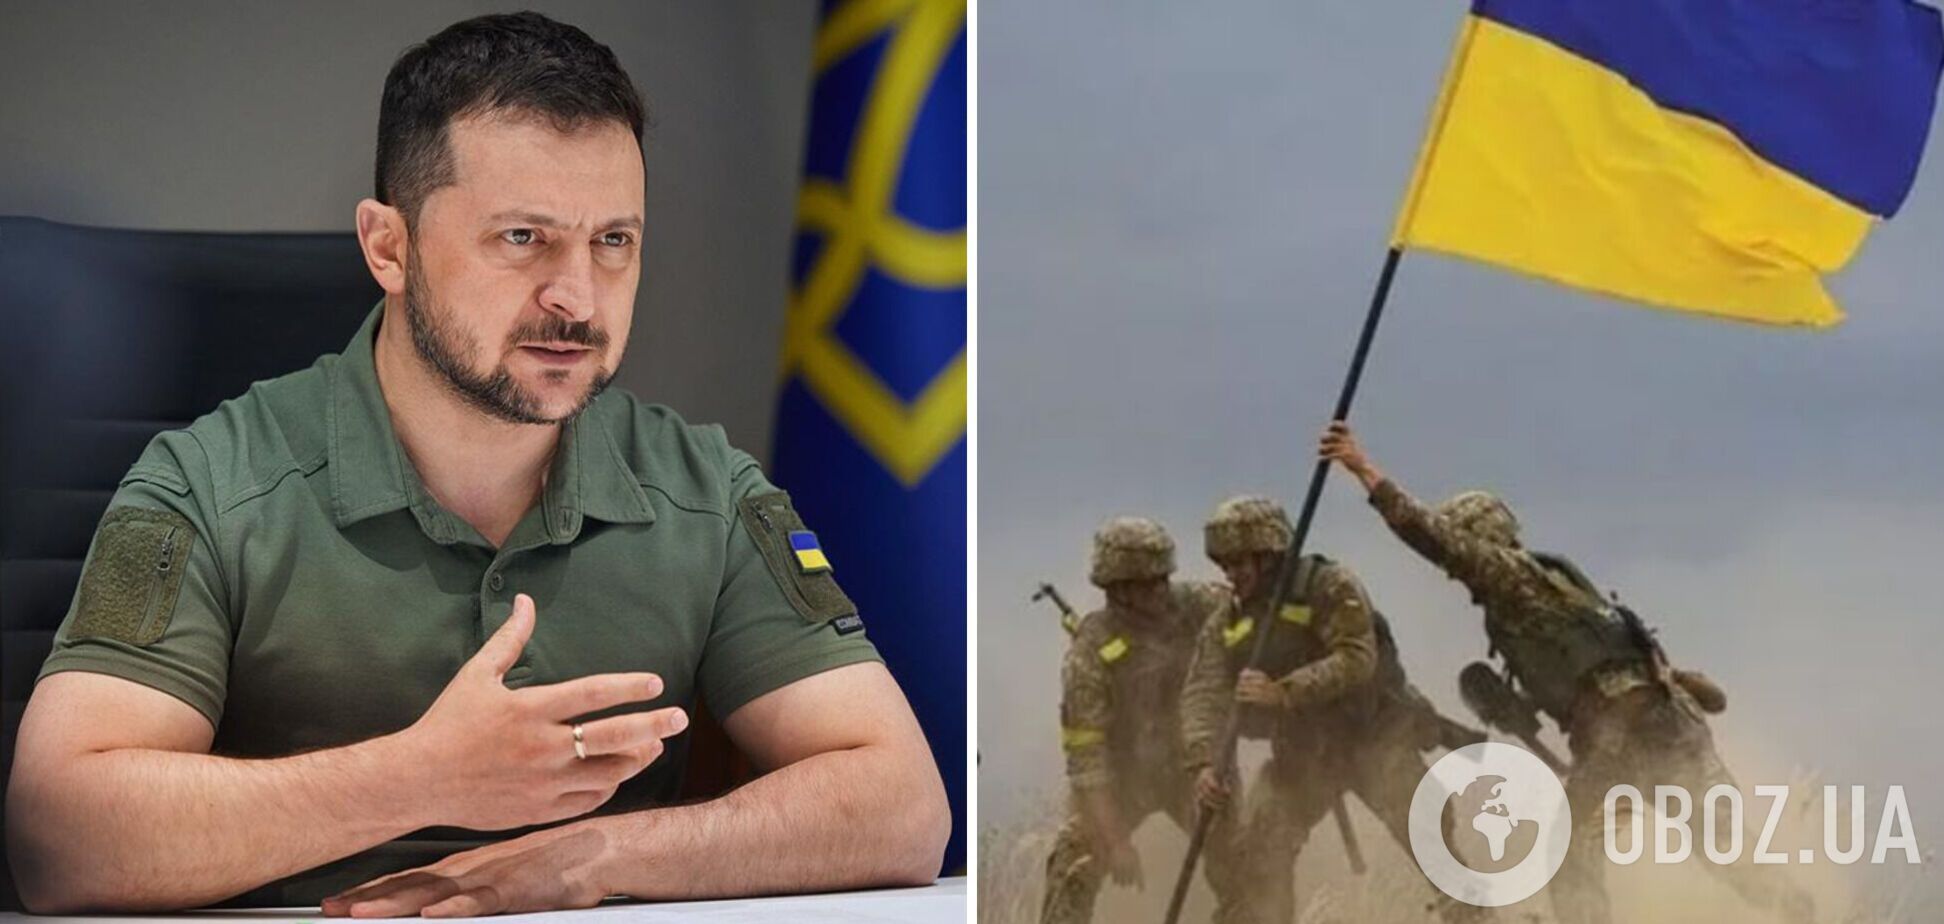 'Заходят тяжелая техника, артиллерия, средства ПВО': Зеленский рассказал о помощи Украине и ситуации на фронте